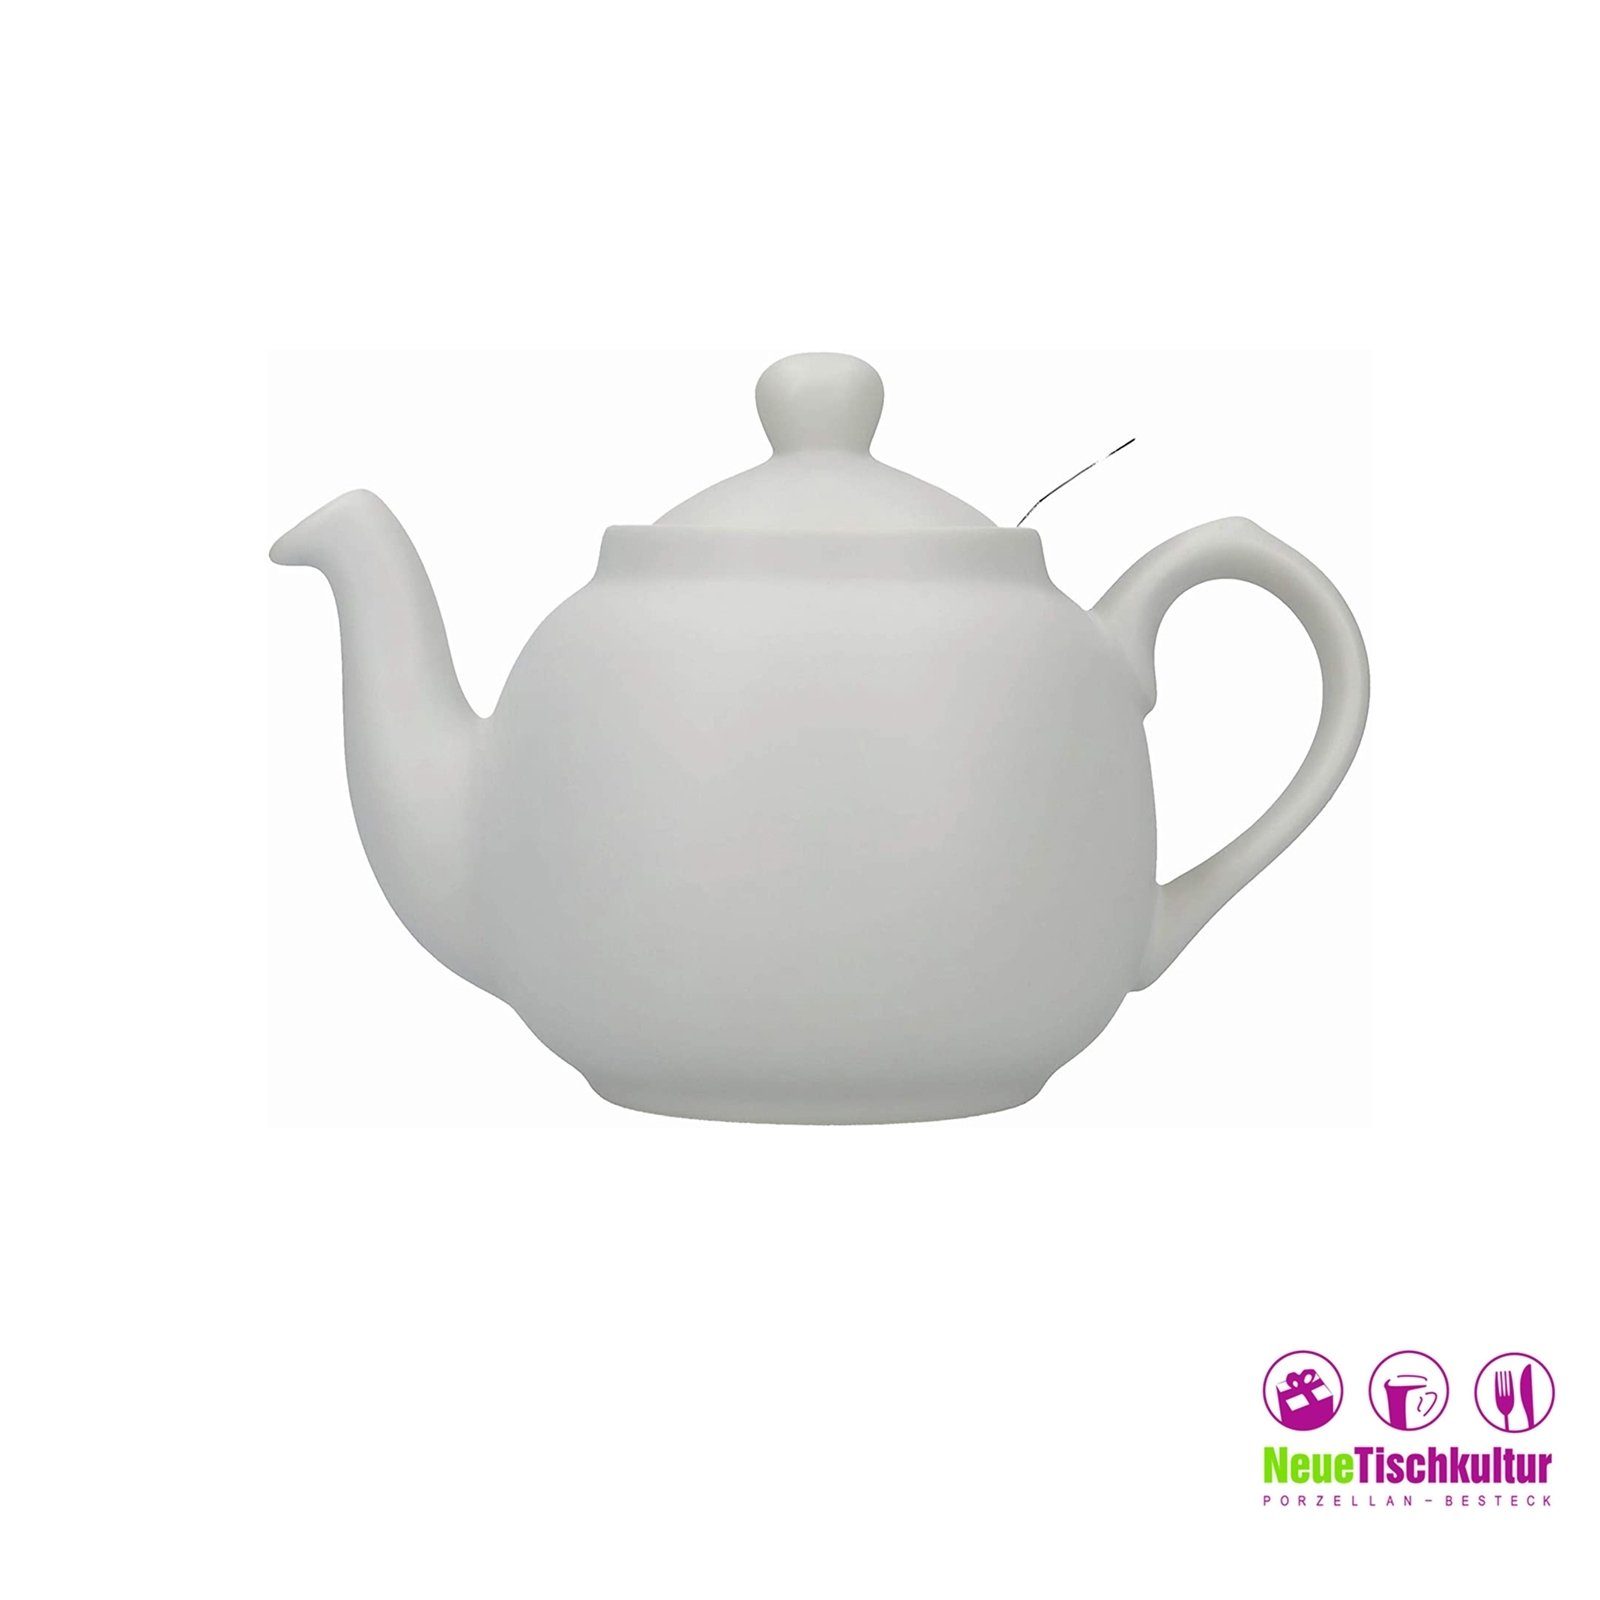 0.6 l für Neuetischkultur Teekanne Teekanne Keramik, Grau 2 Tassen, Nordisch